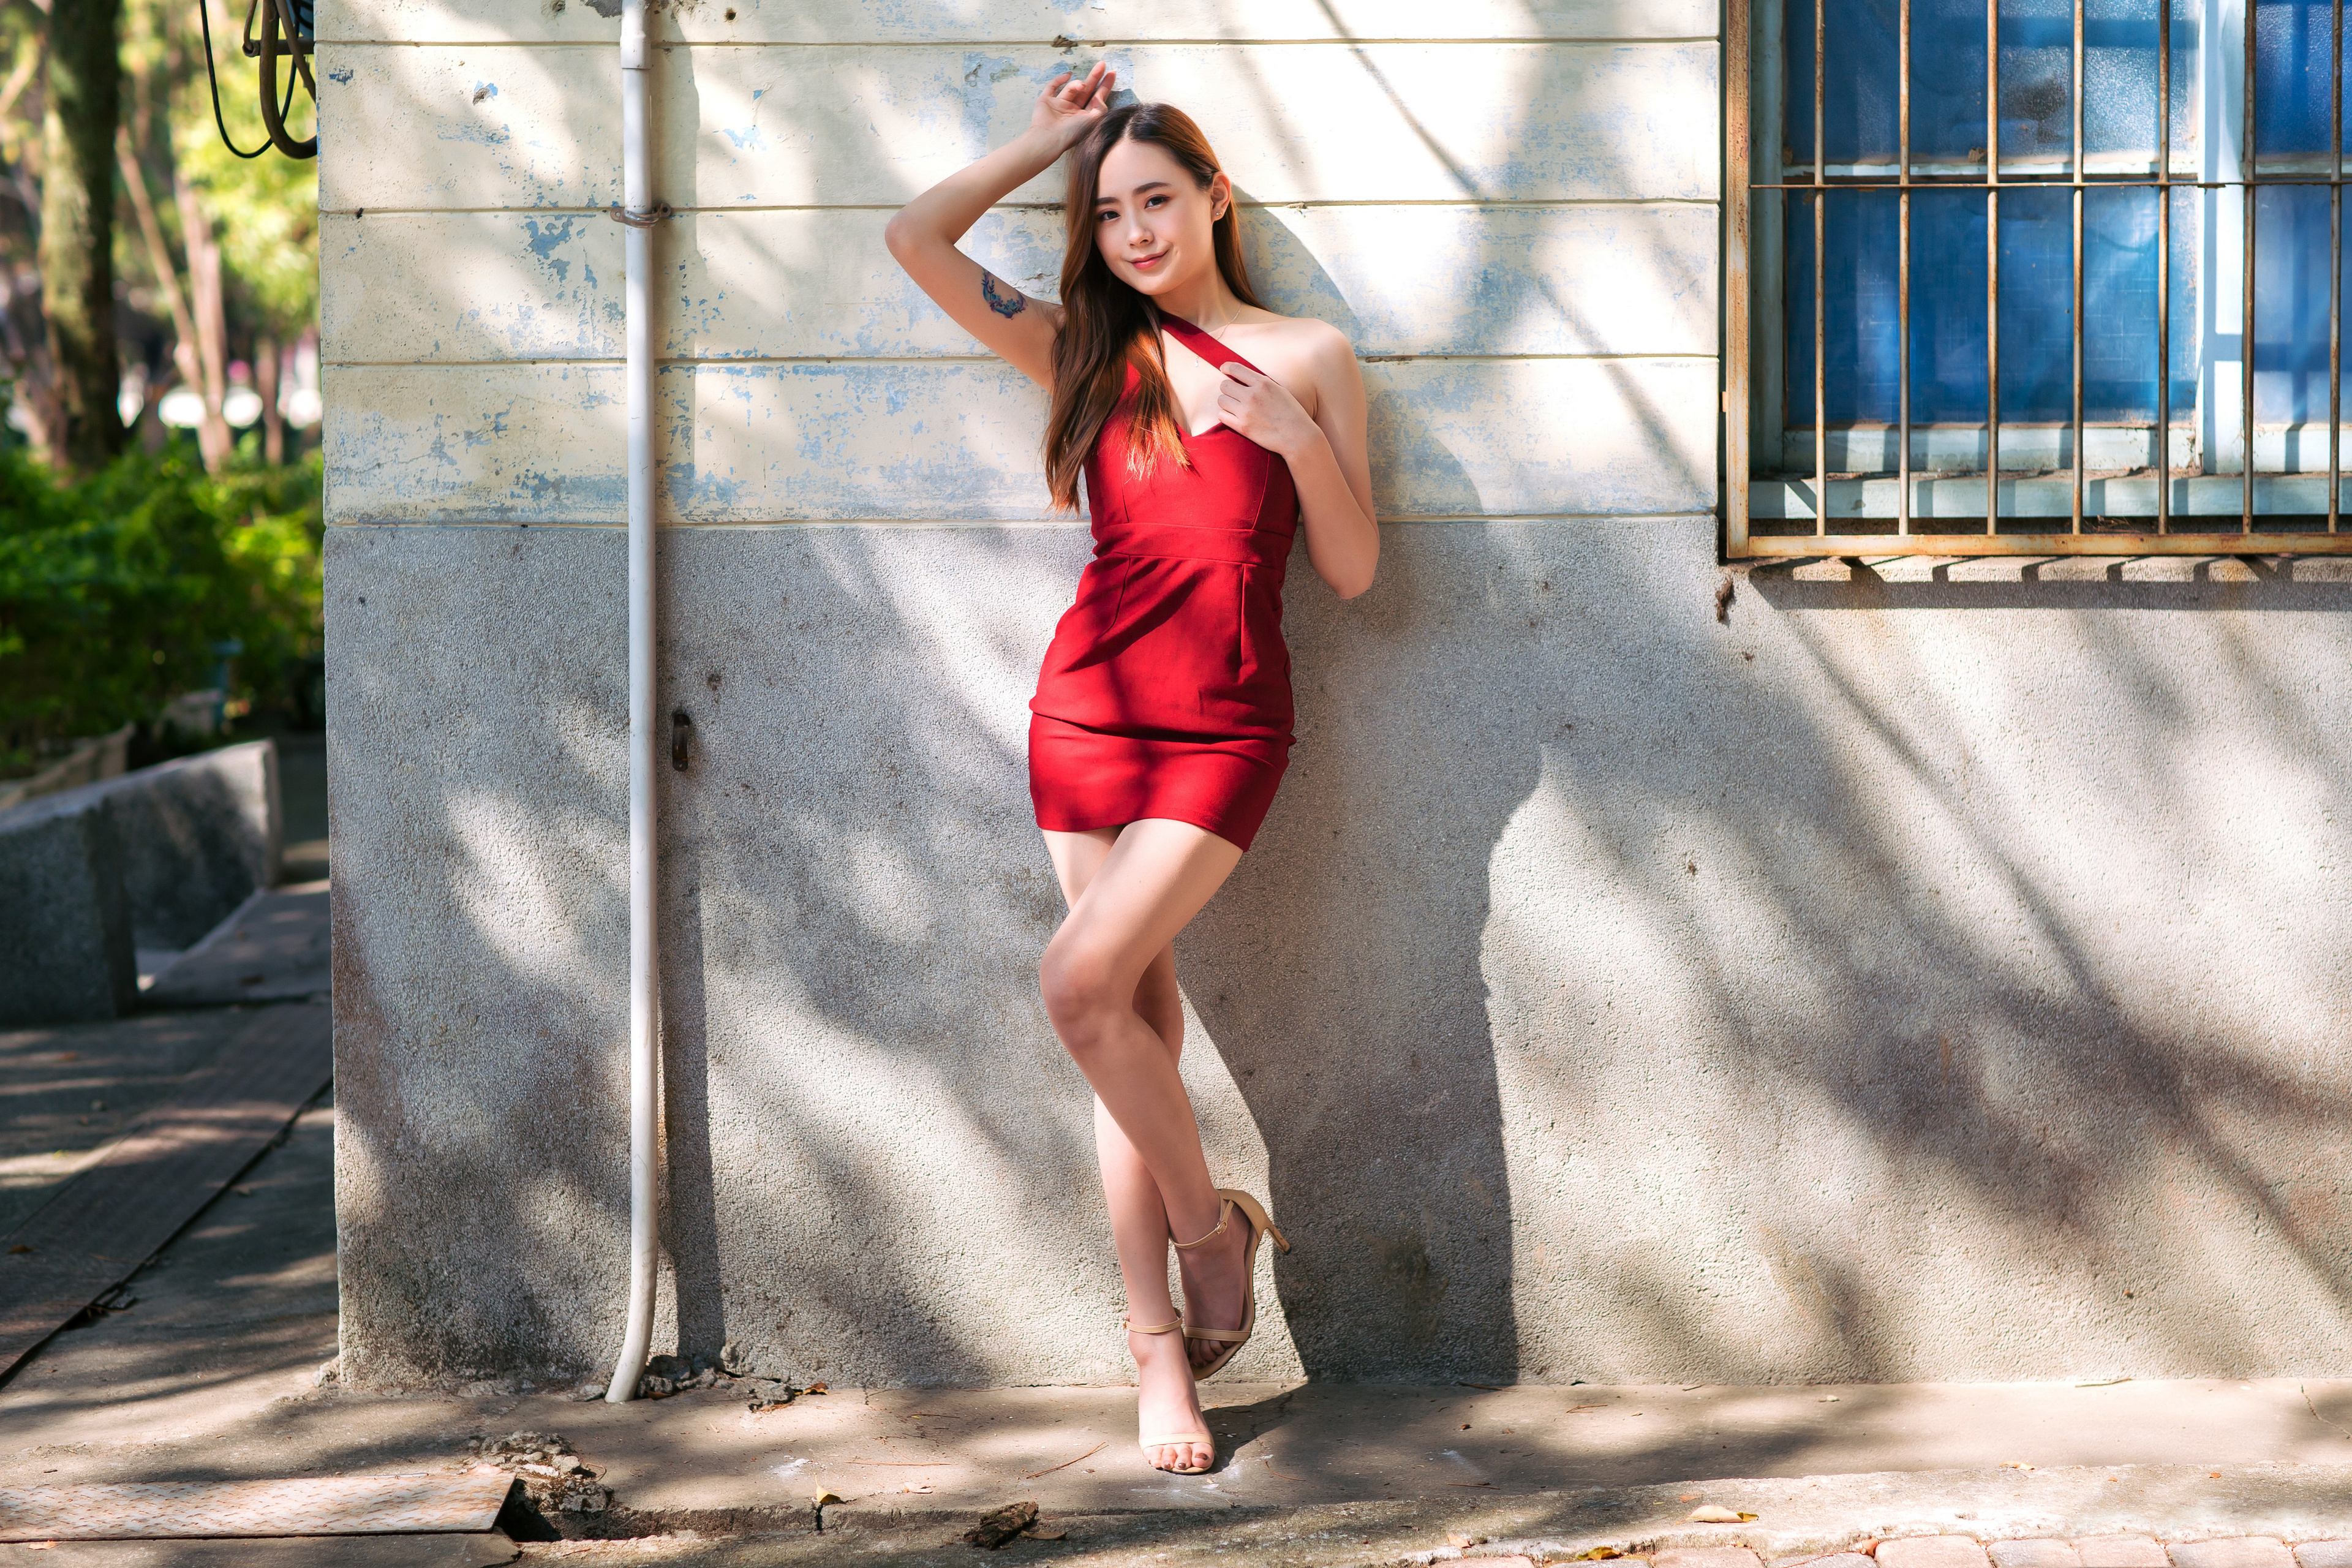 Asian Model Women Long Hair Brunette Red Dress Leaning Drains Tattoo Barefoot Sandal Window Bars Tre 3840x2560